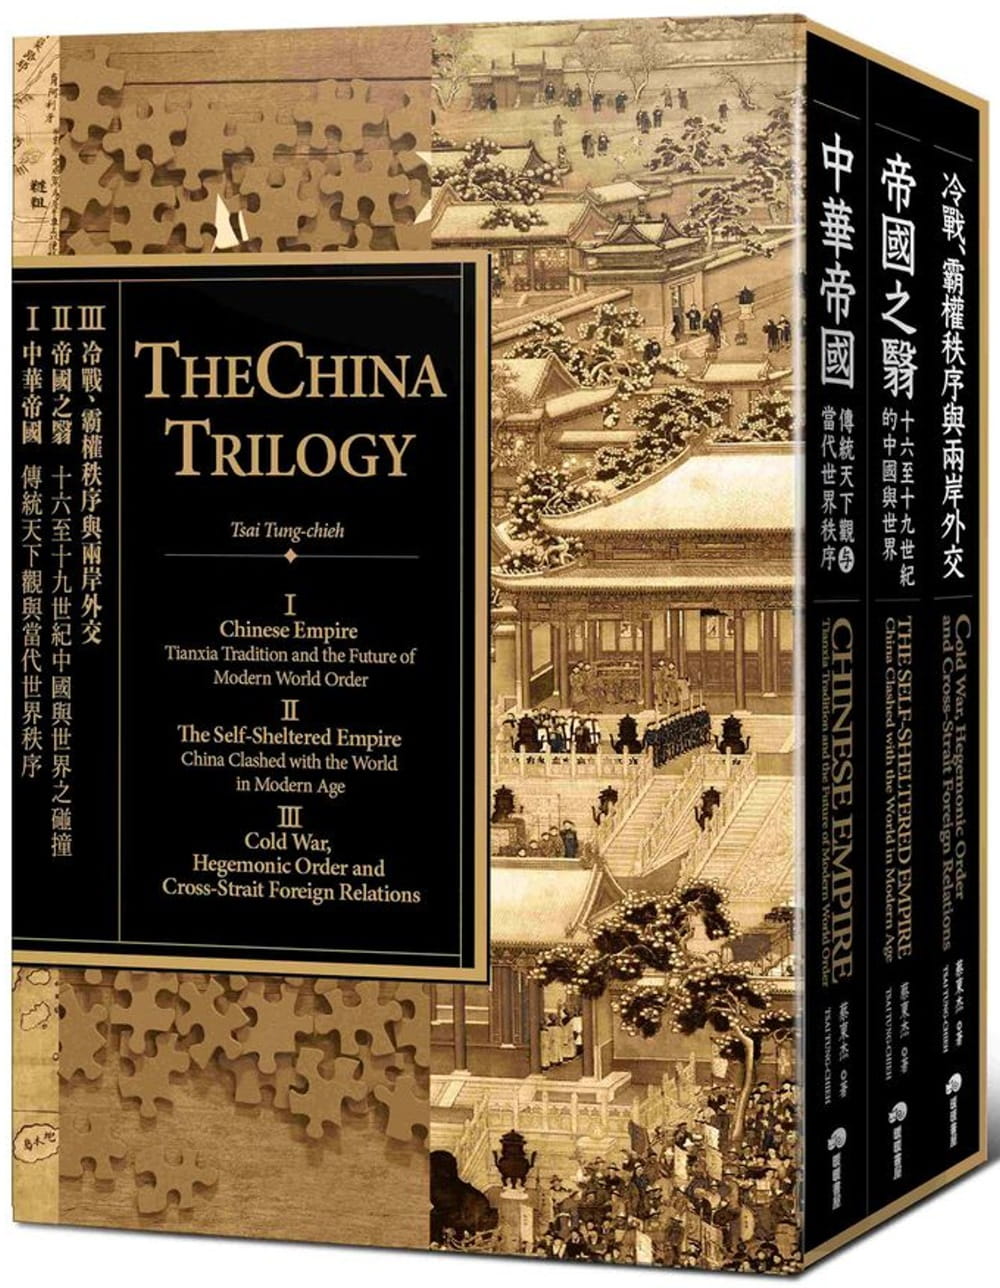 中國三部曲（中華帝國＋帝國之翳＋冷戰、霸權秩序與兩岸外交）